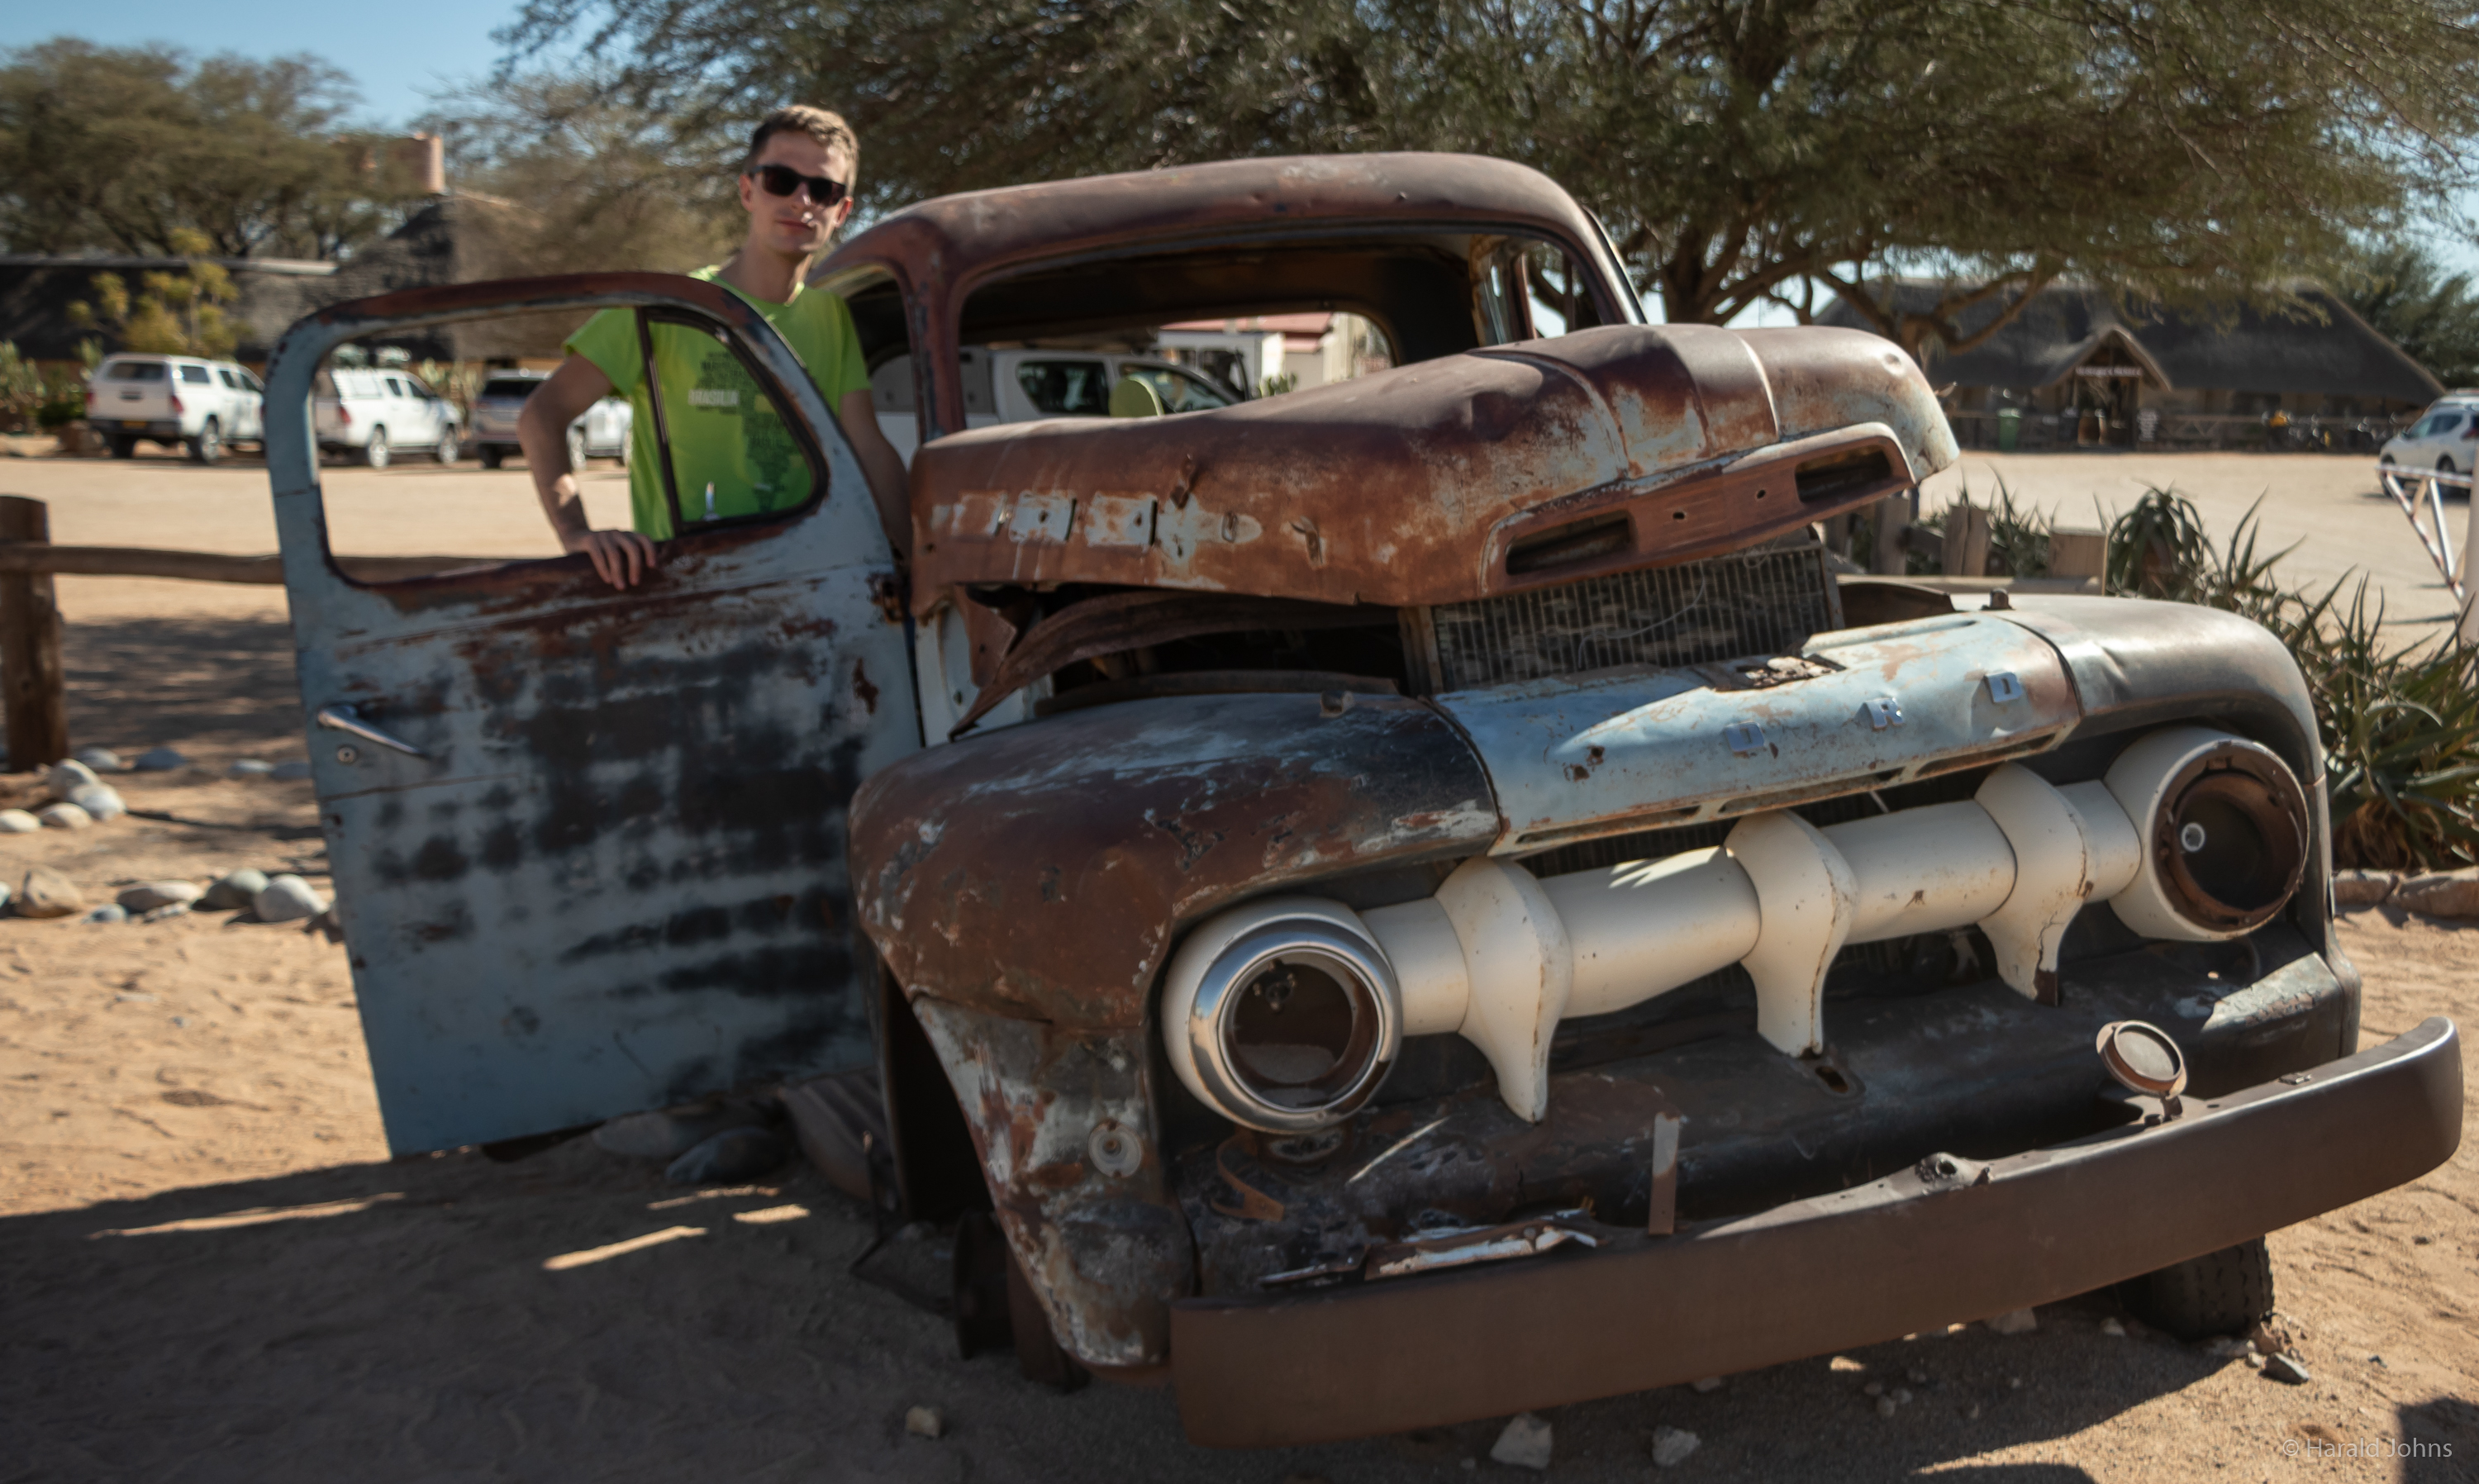 Solitaire - die berühmte Wüstenoase mit alten Fahrzeugwracks 